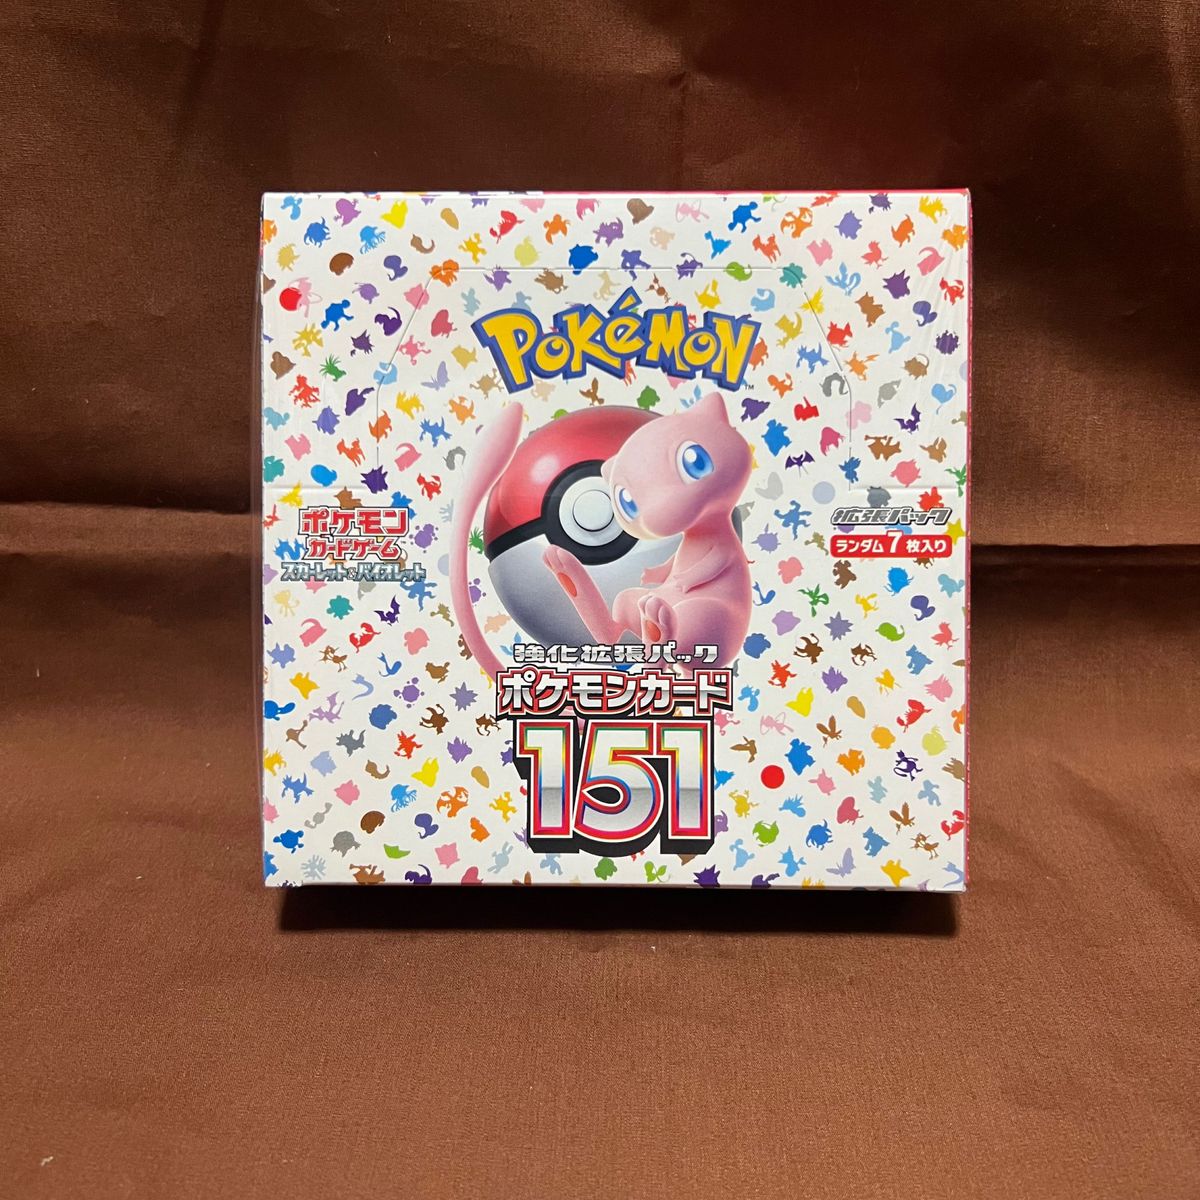 ポケモンカードゲーム ソード&シールド 拡張パック 151 BOX ボックス